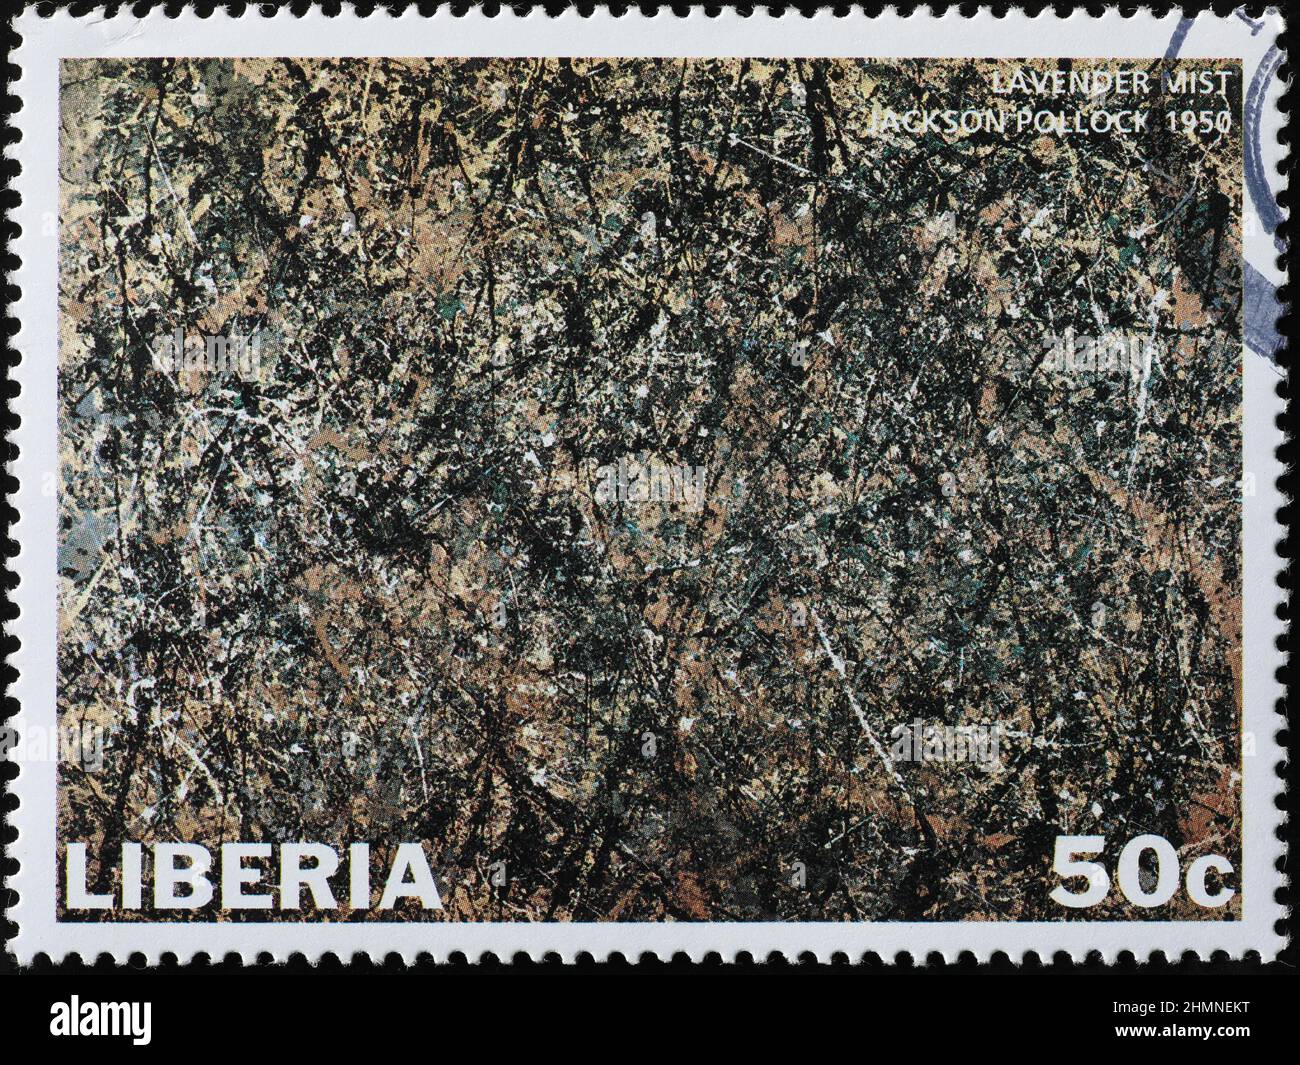 Brume lavande de Jackson Pollock sur timbre-poste Banque D'Images